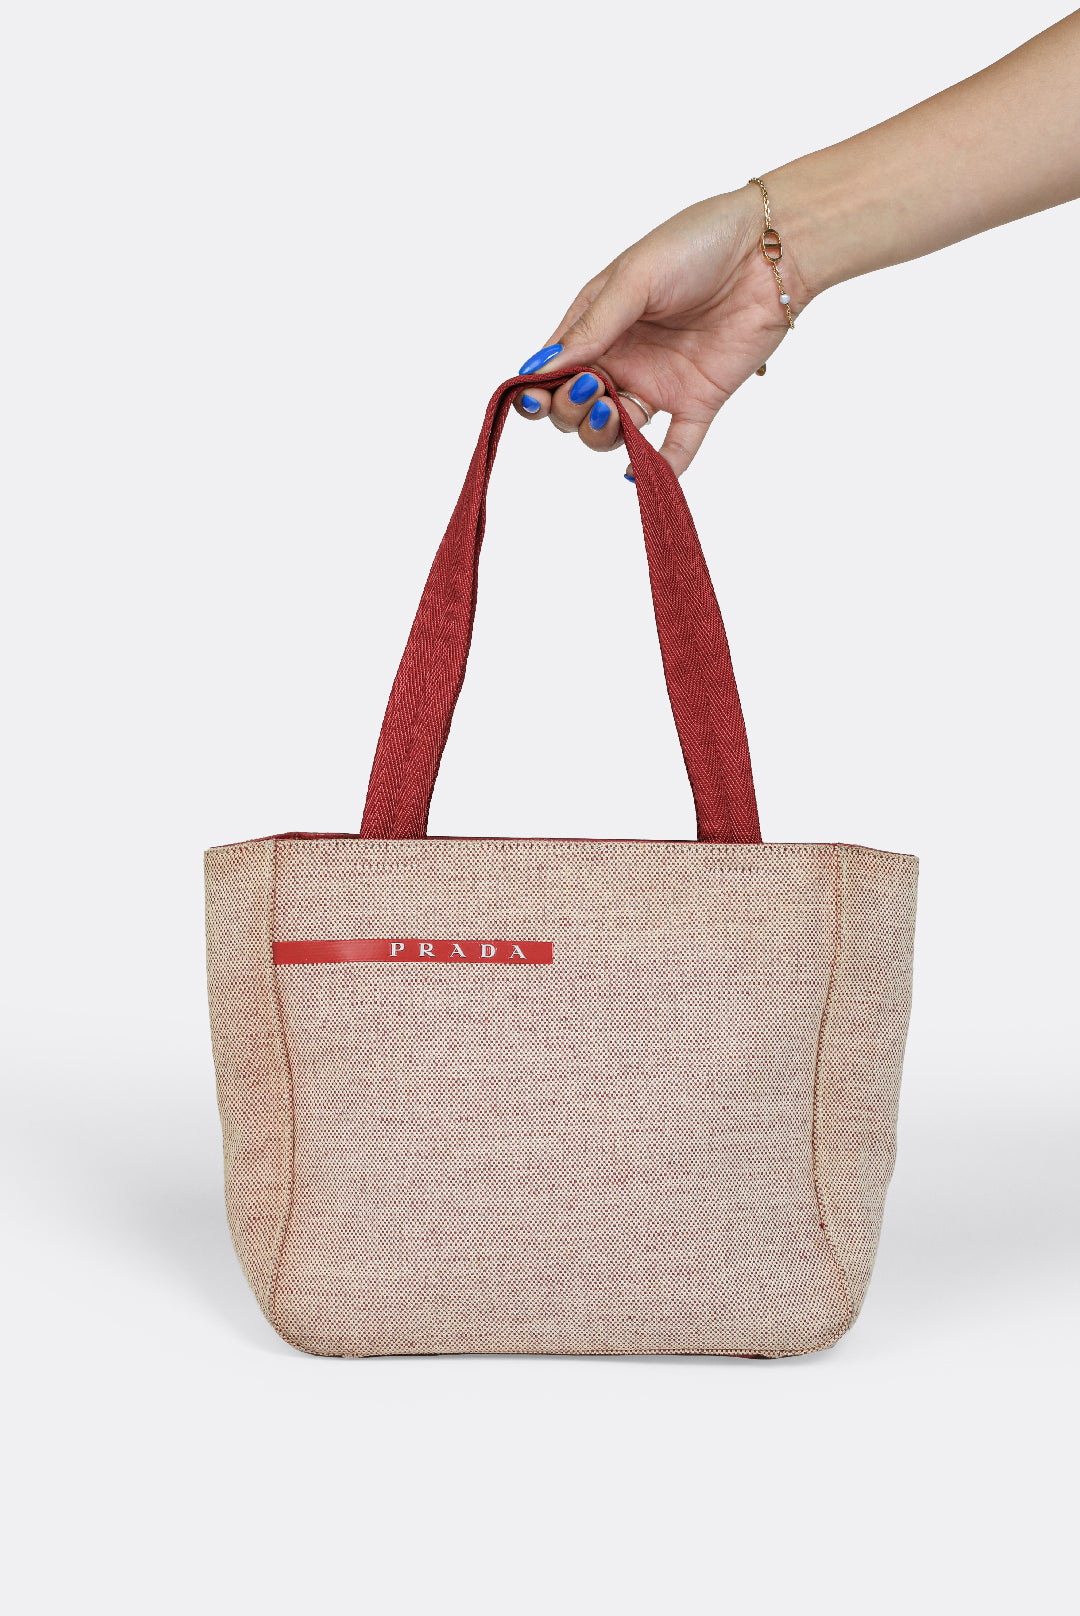 Vintage Prada Tote Bags - 162 For Sale at 1stDibs  prada logo tote, prada  book tote, prada frankenstein bag